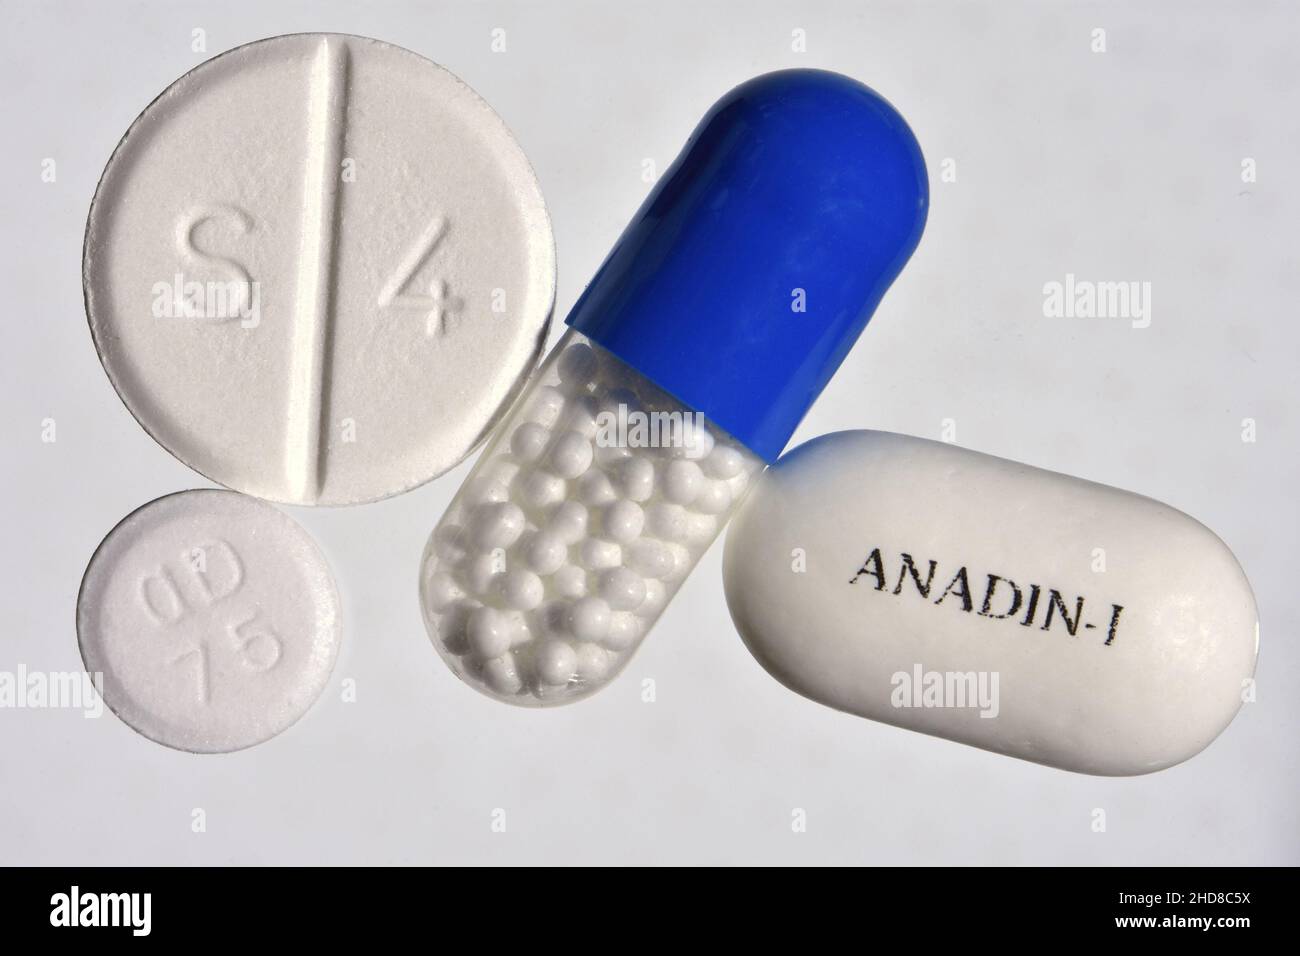 Analgésicos: Cápsula de ibuprofeno, tableta de cocodamol (S4) Aspirina dispersable (OD 75) y tableta de ibuprofeno de Adadin Foto de stock